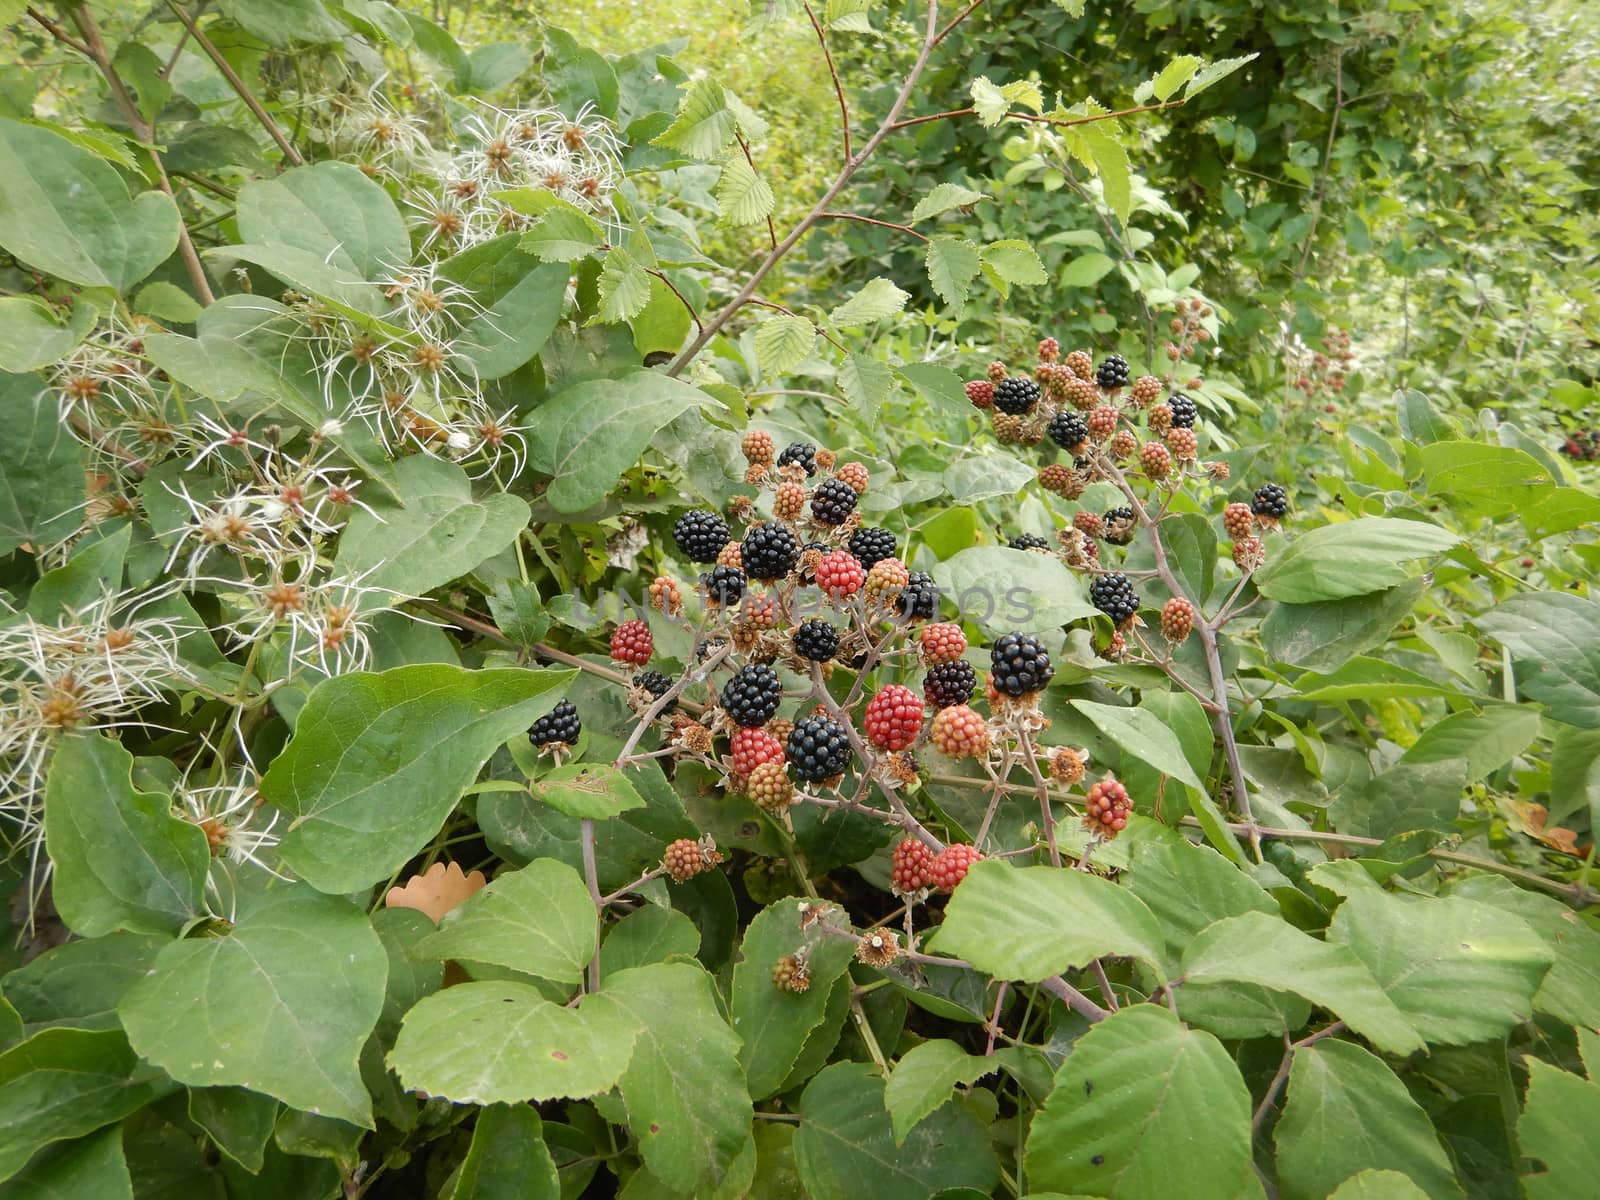 Tasty blackberries along a path. La Morra, Piedmont - Italy